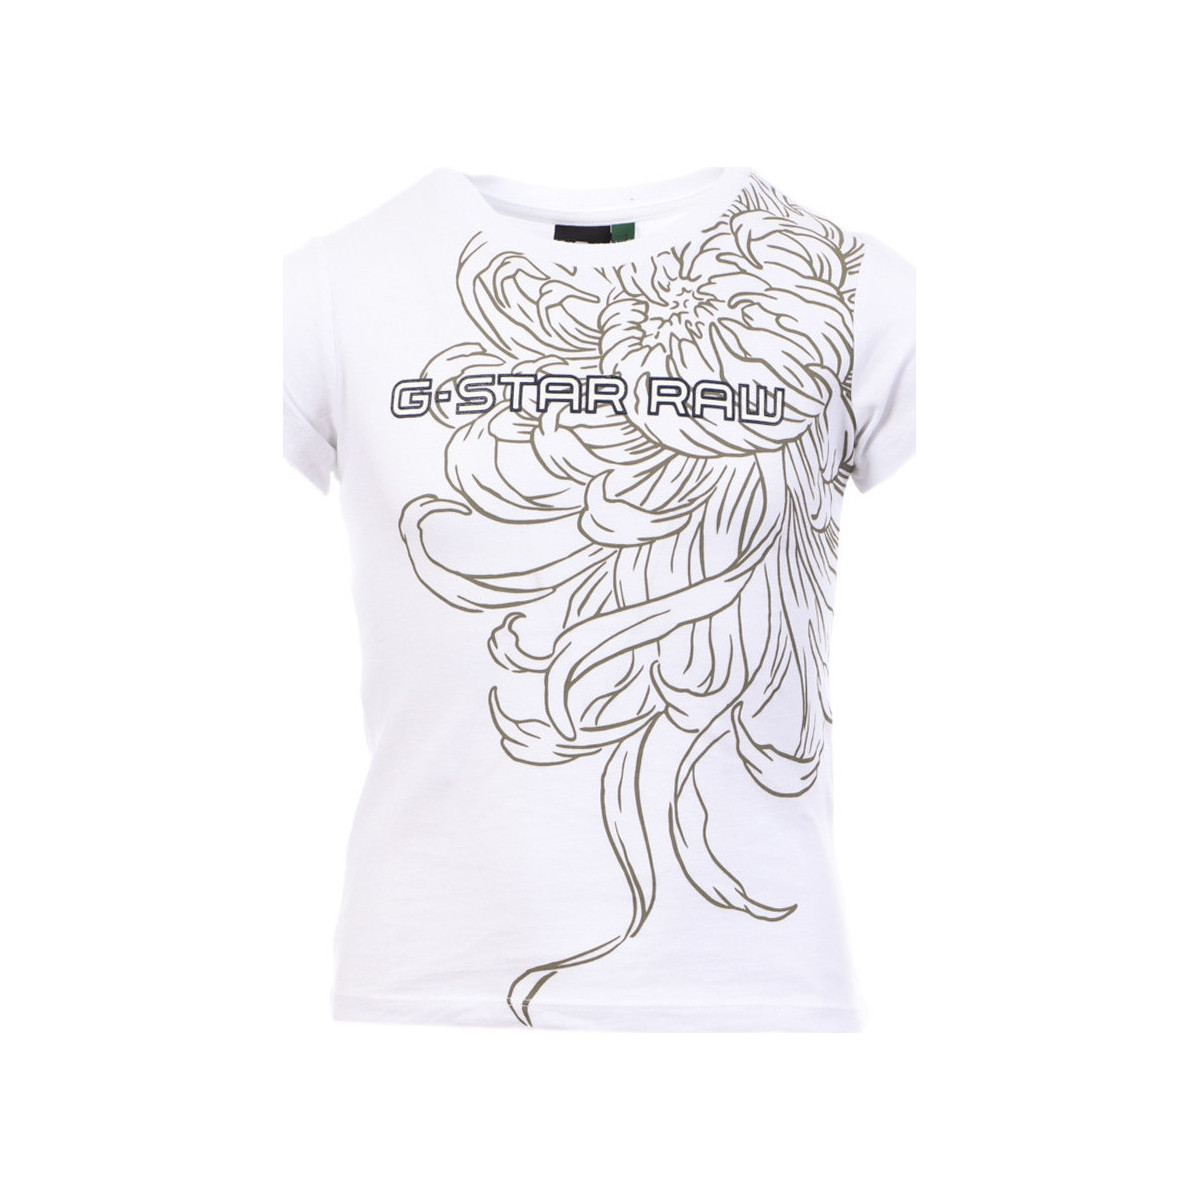 Vêtements Garçon t-shirt med broderat körsbär SQ10706 Blanc